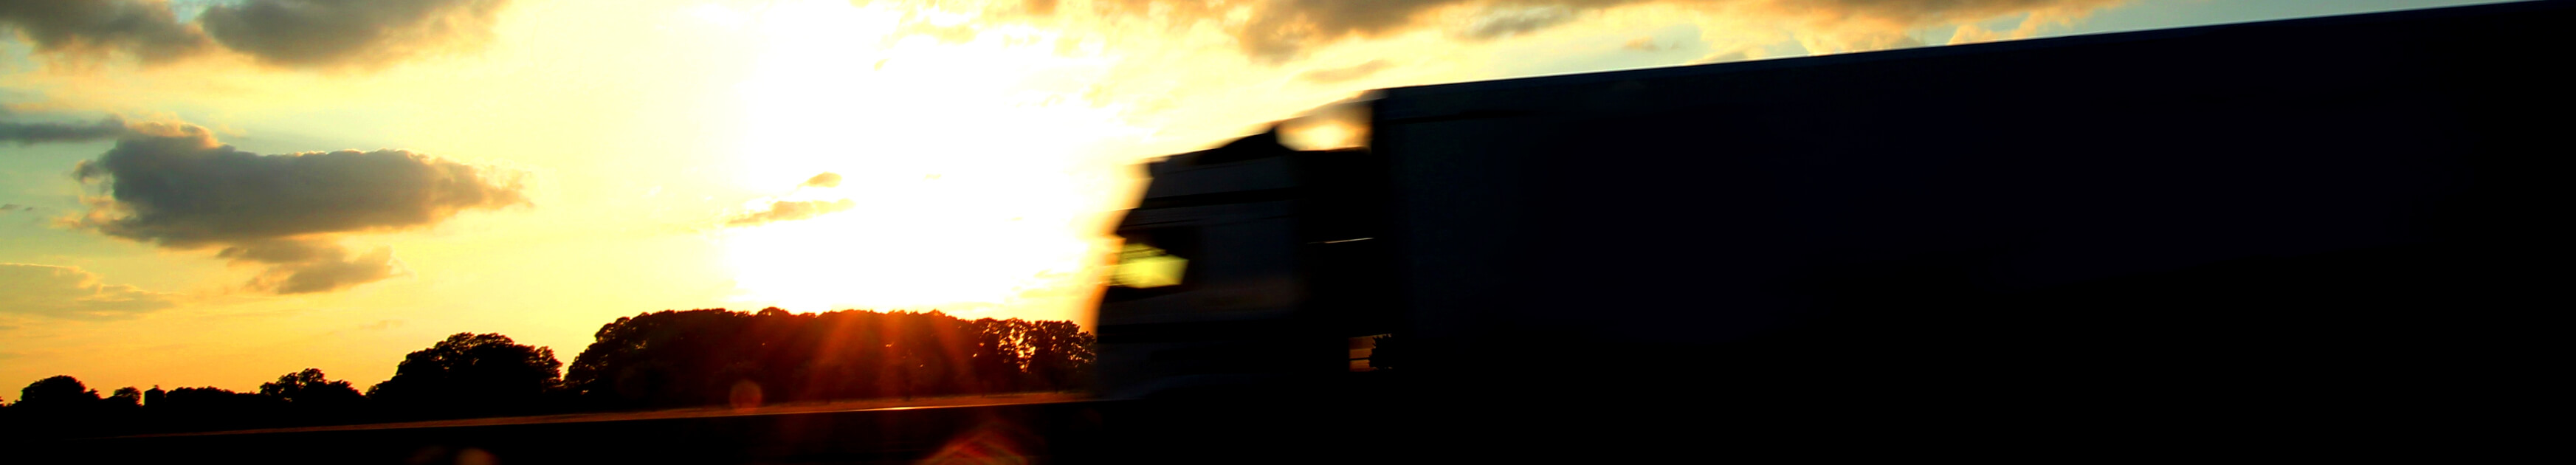 Silhouette eines LKS auf der Autobahn bei Sonnenuntergang und dahinter Bäume